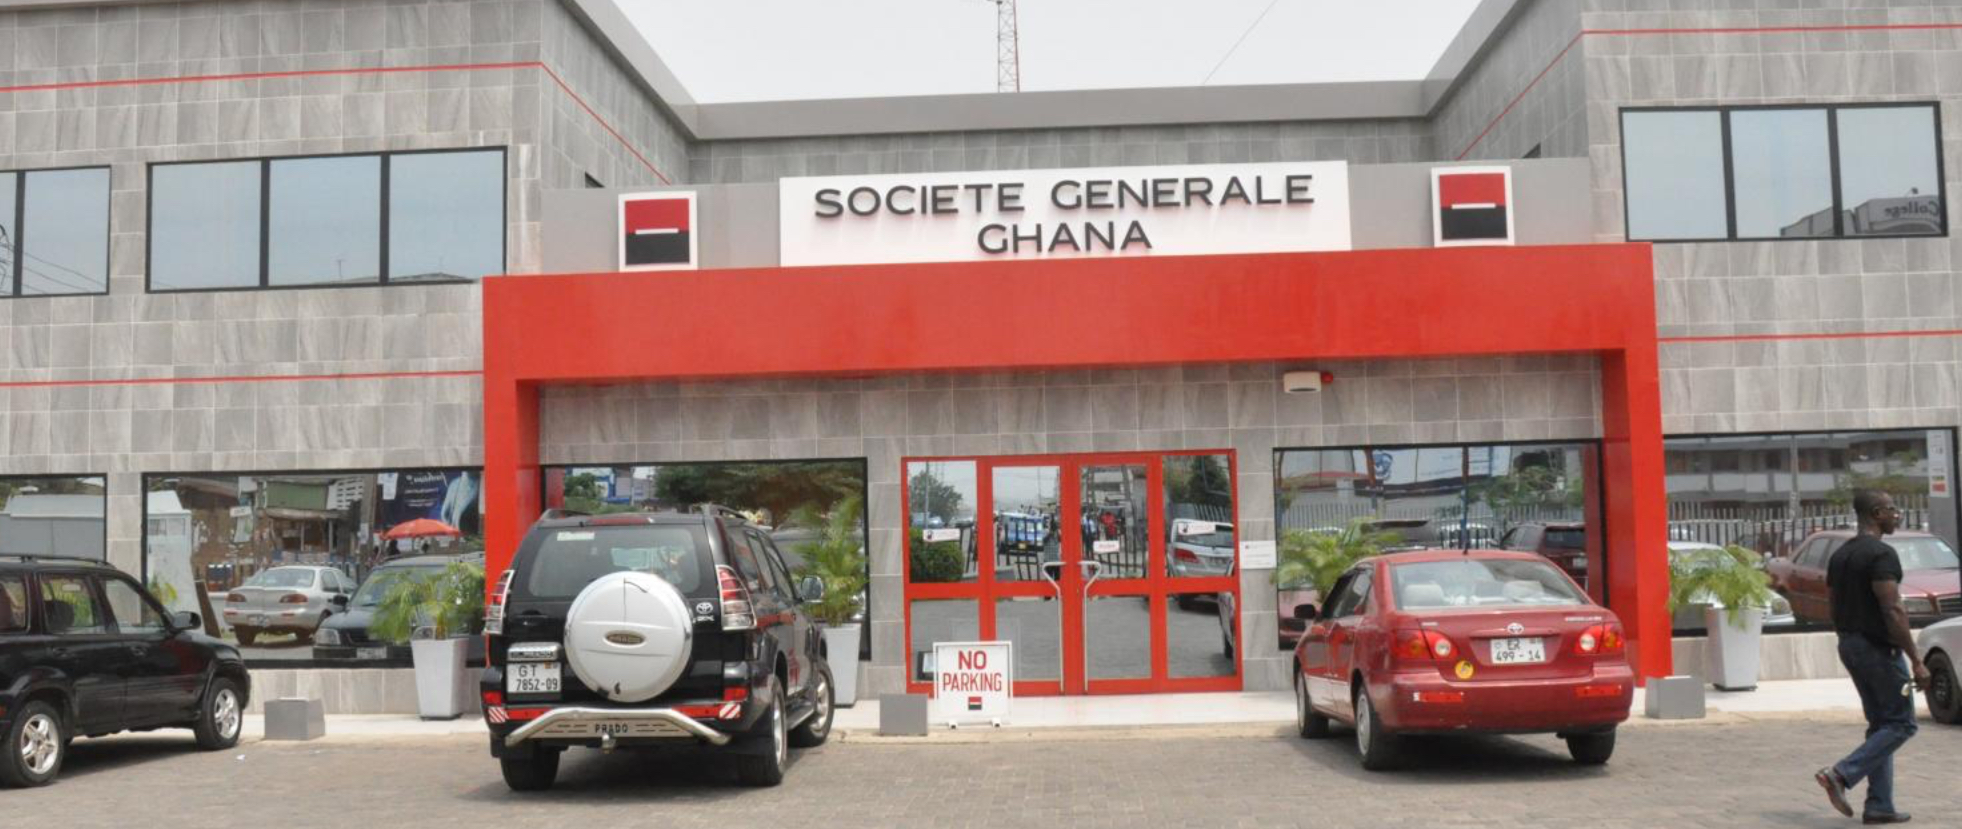 Proparco et la Société Générale Ghana facilitent l’accès au financement des PME